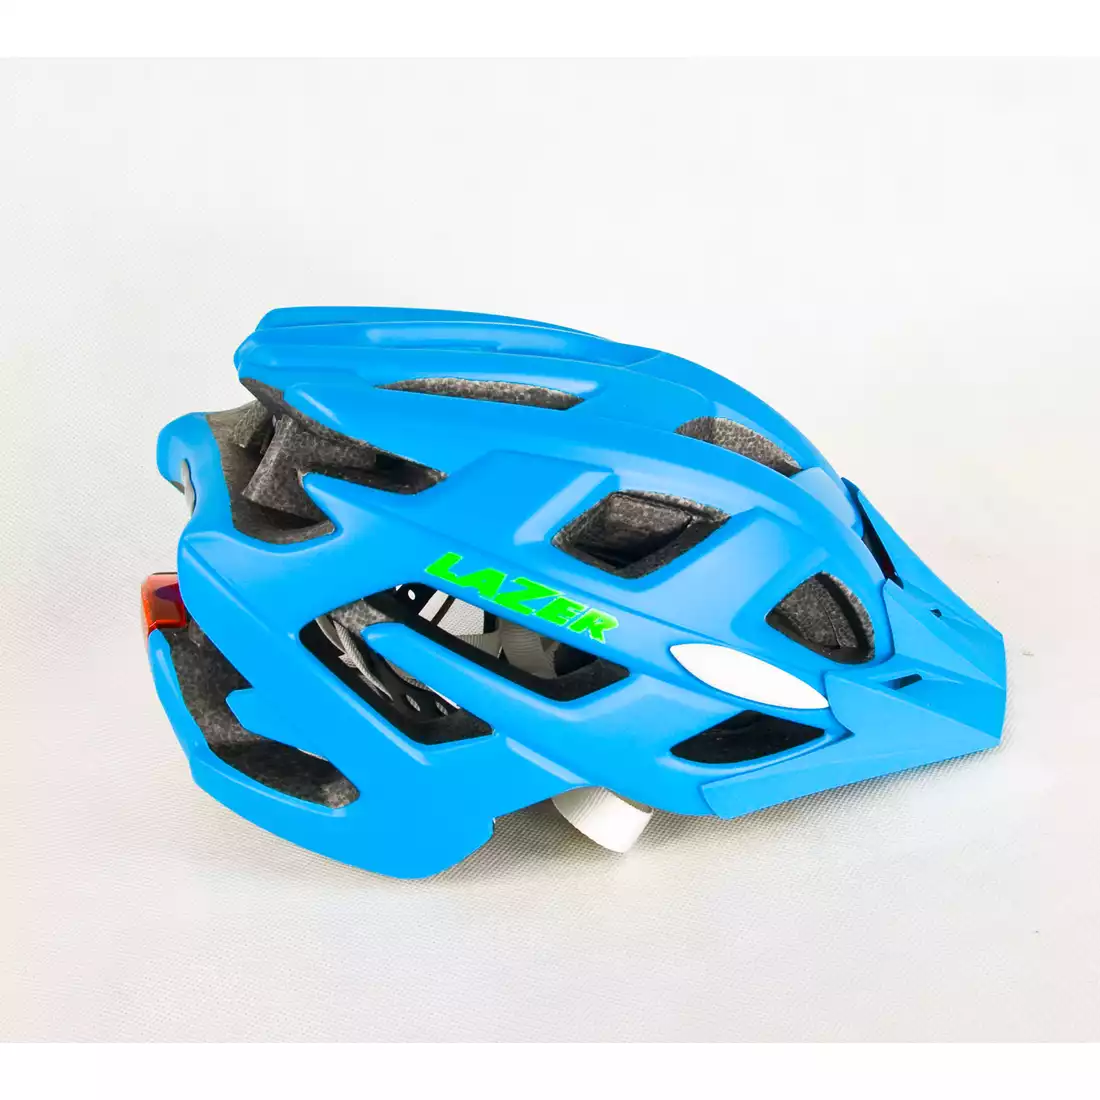 LAZER - ULTRAX kask rowerowy MTB, kolor: cyan blue